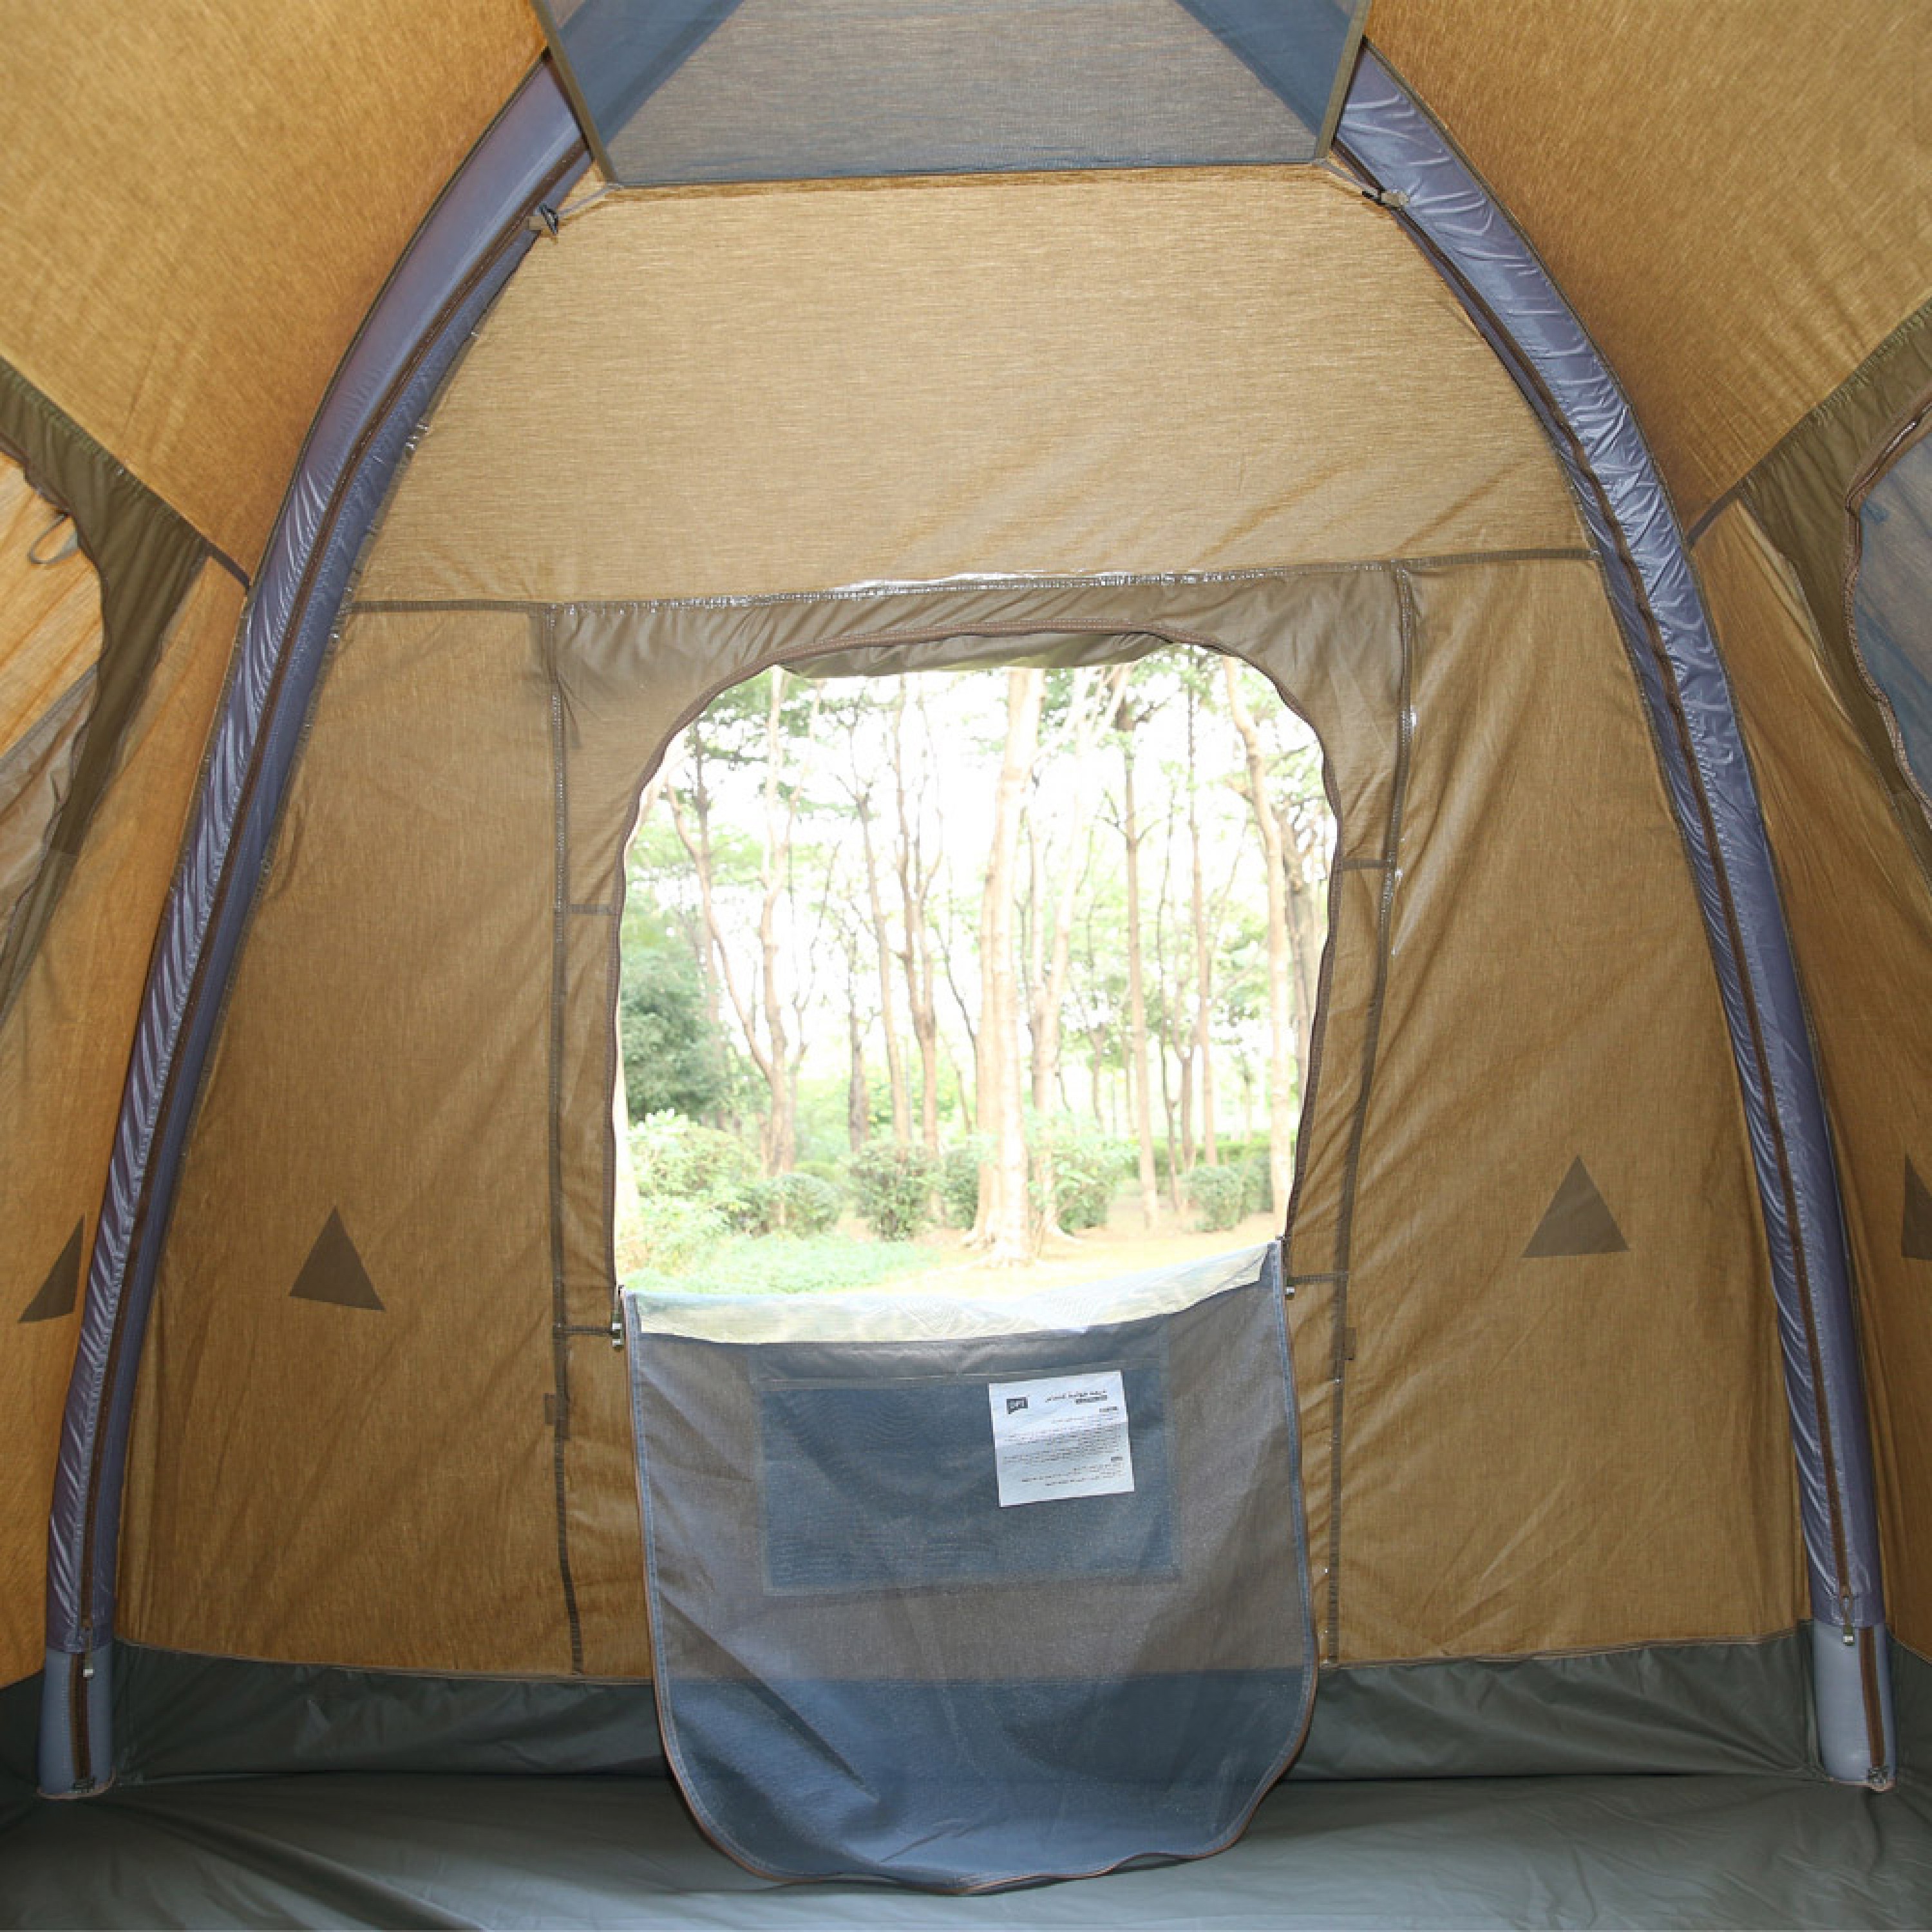 دي بي تي، خيمة رحلات هوائية قماش قطني، خيمة نفخ بالهواء، كاكي غامق، مقاس 300*300*215 سم